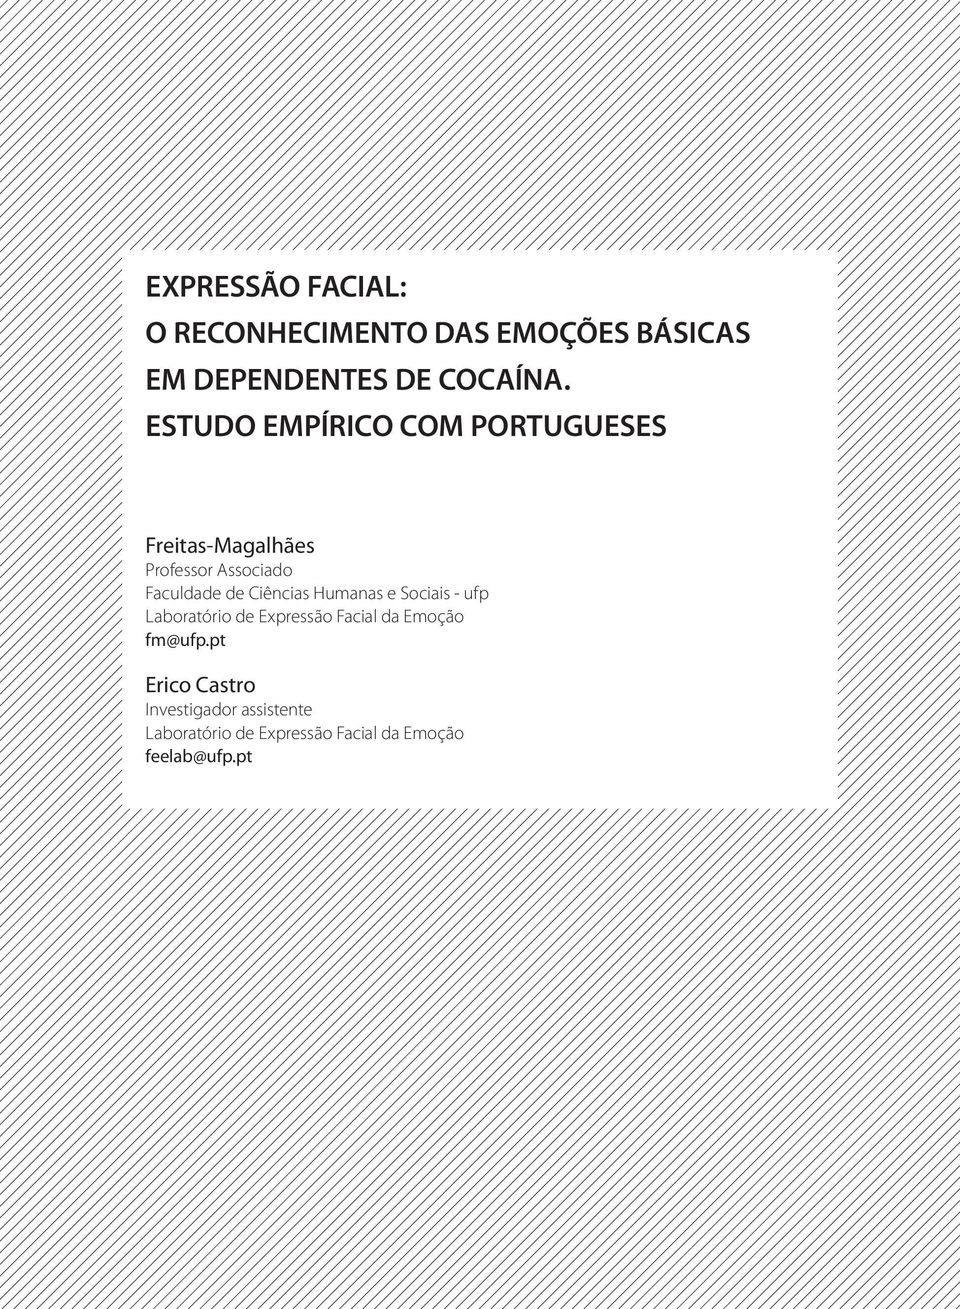 Ciências Humanas e Sociais - ufp Laboratório de Expressão Facial da Emoção fm@ufp.